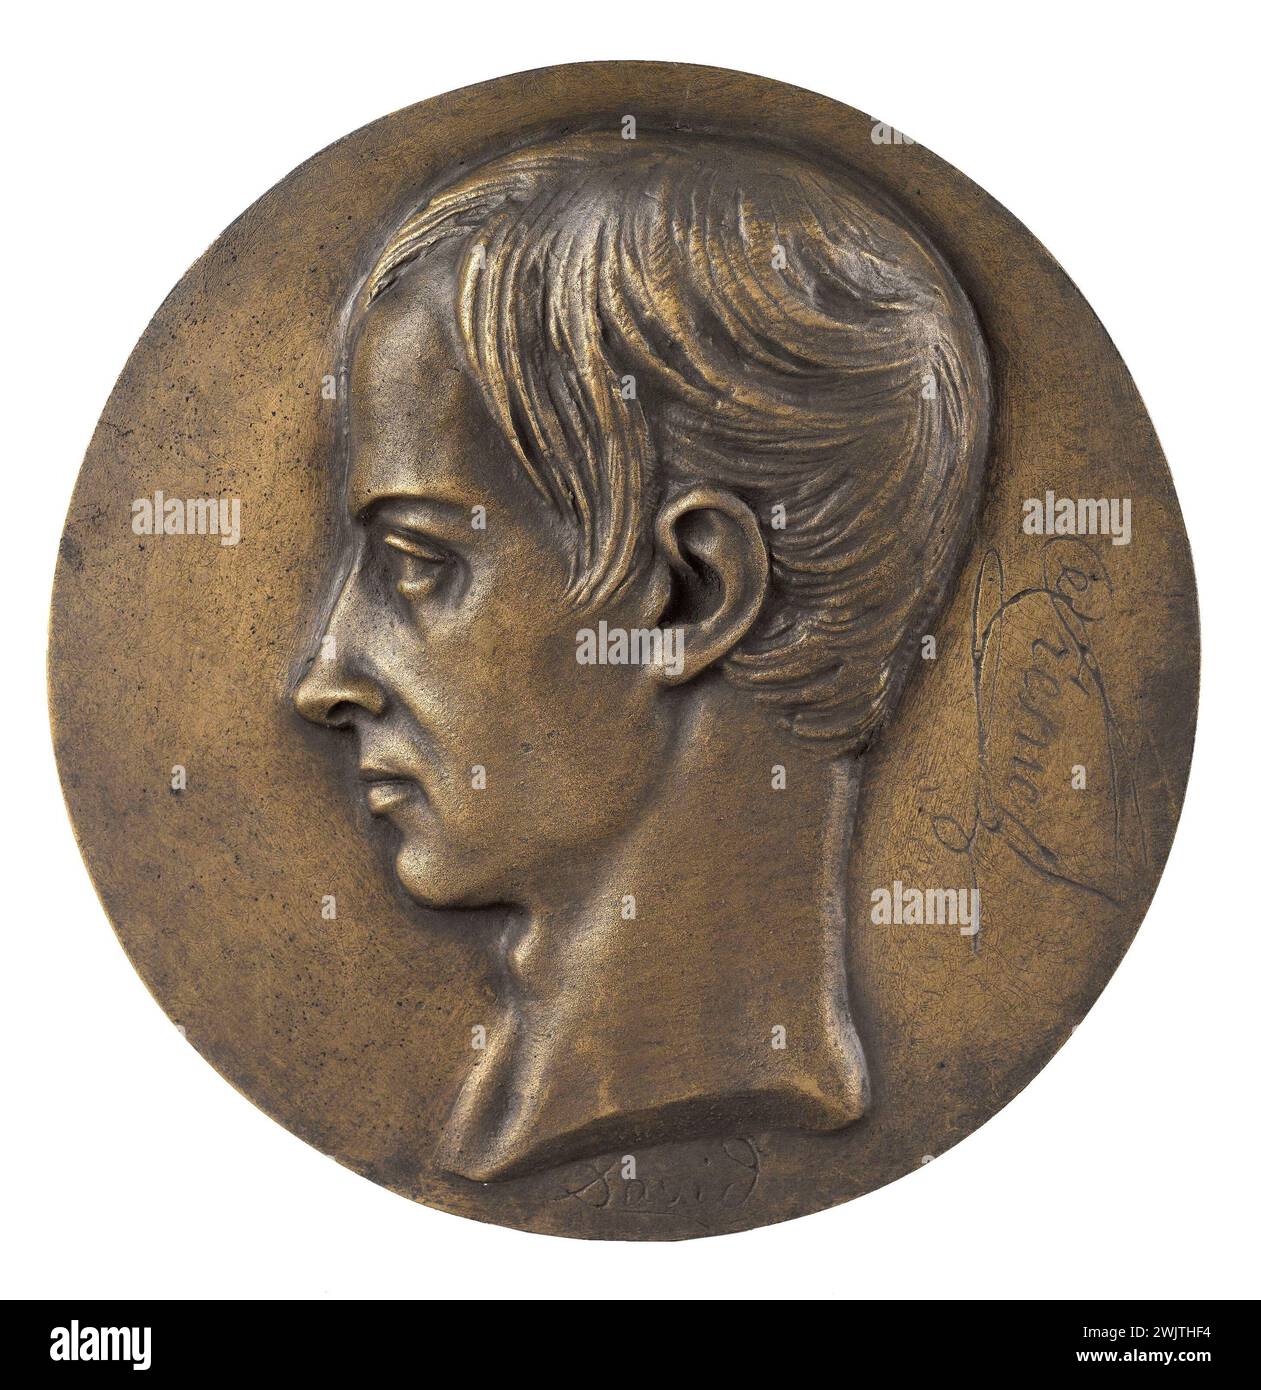 David d'Angers (1788-1856). Portrait of Augustin-Jean Fresnel (1788-1827), physicist. Bronze, sand cast iron. Nineteenth century. Paris, Carnavalet museum. 58290-12 Bronze, sand cast iron, medallion, French physicist, profile, portrait Stock Photo